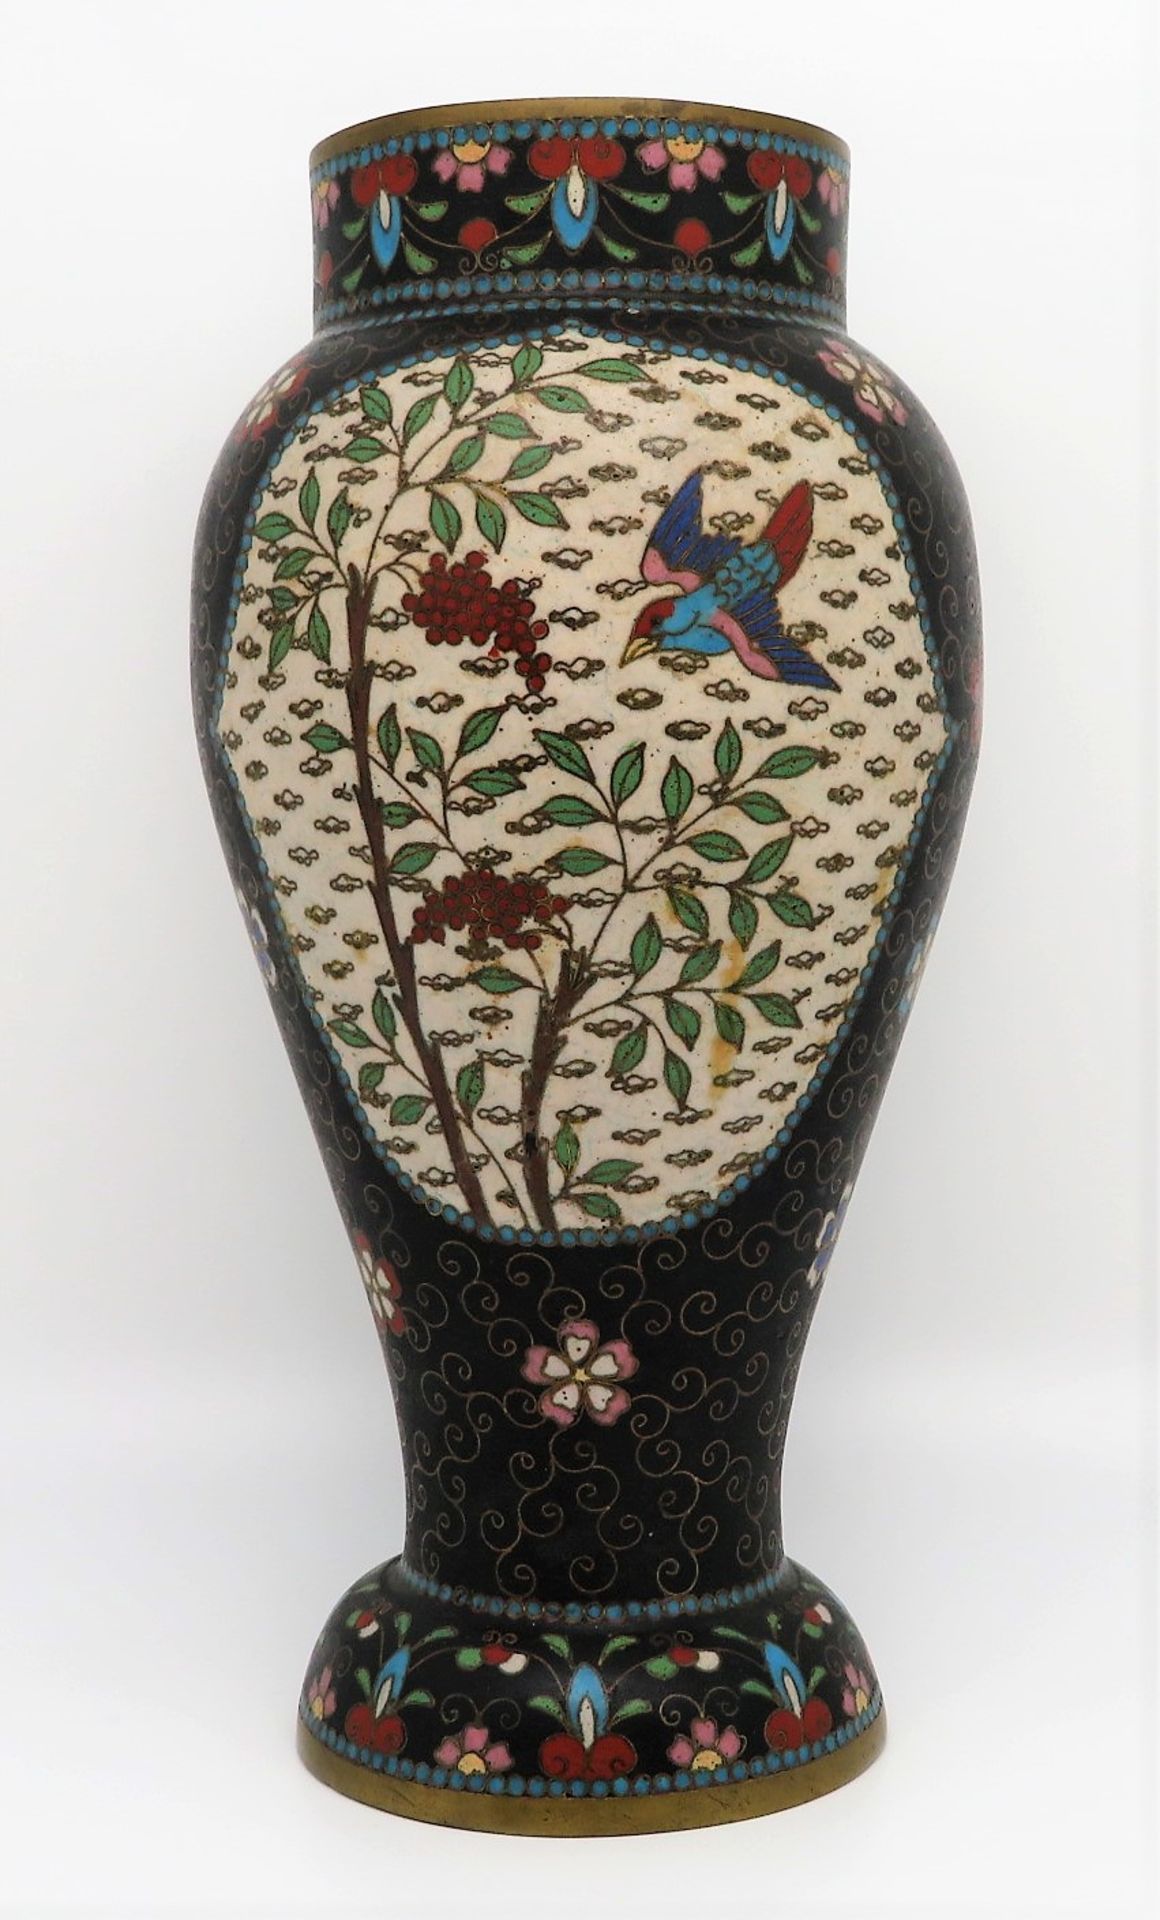 Cloisonné Vase, Japan, um 1900, farbiger Zellenschmelz, h 20 cm, d 10 cm. - Image 2 of 2